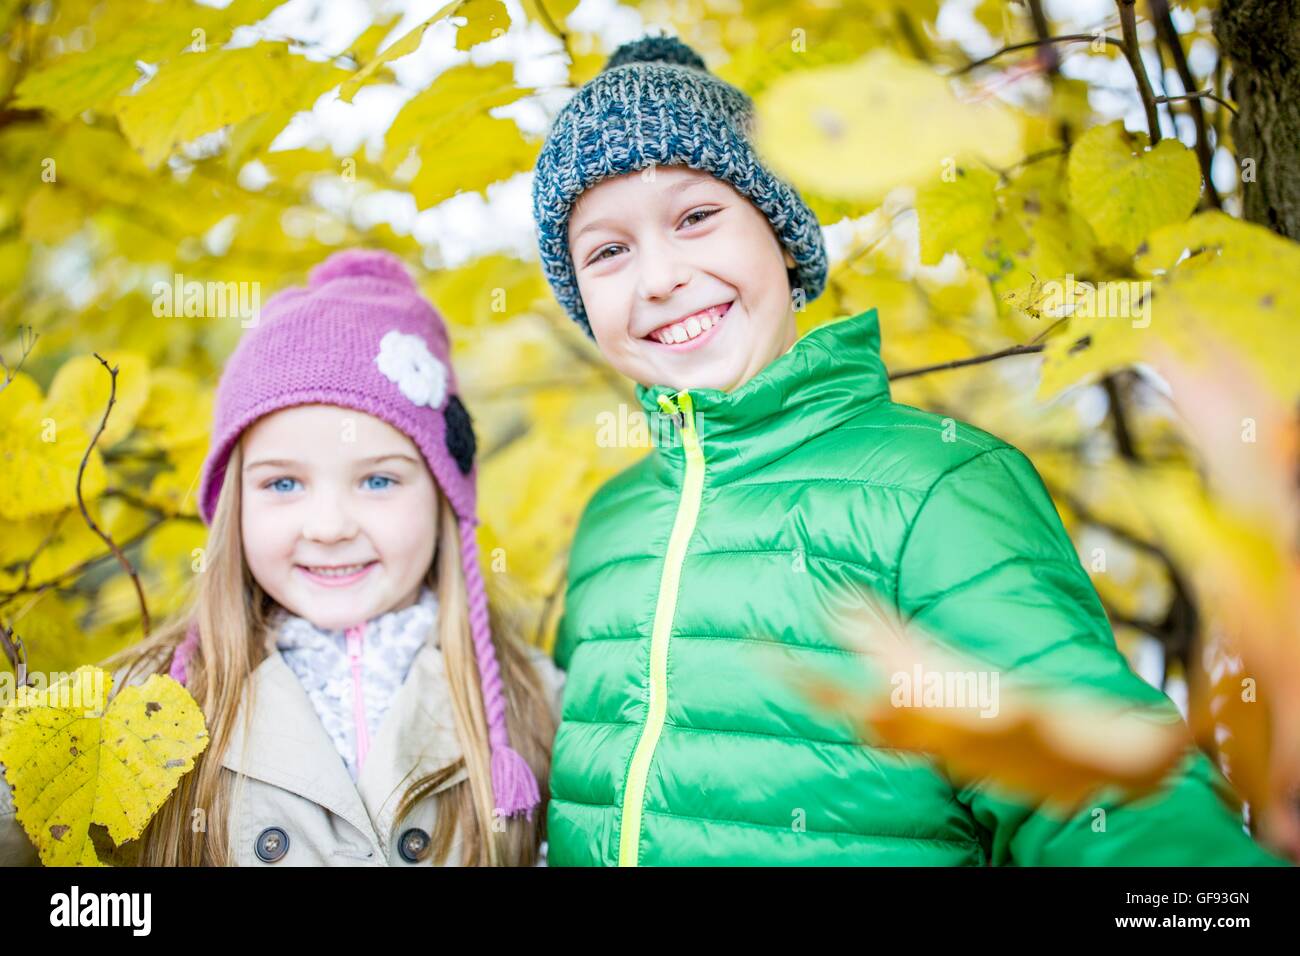 Modelo liberado. Los niños de pie junto a plantas de otoño y sonriente, retrato. Foto de stock